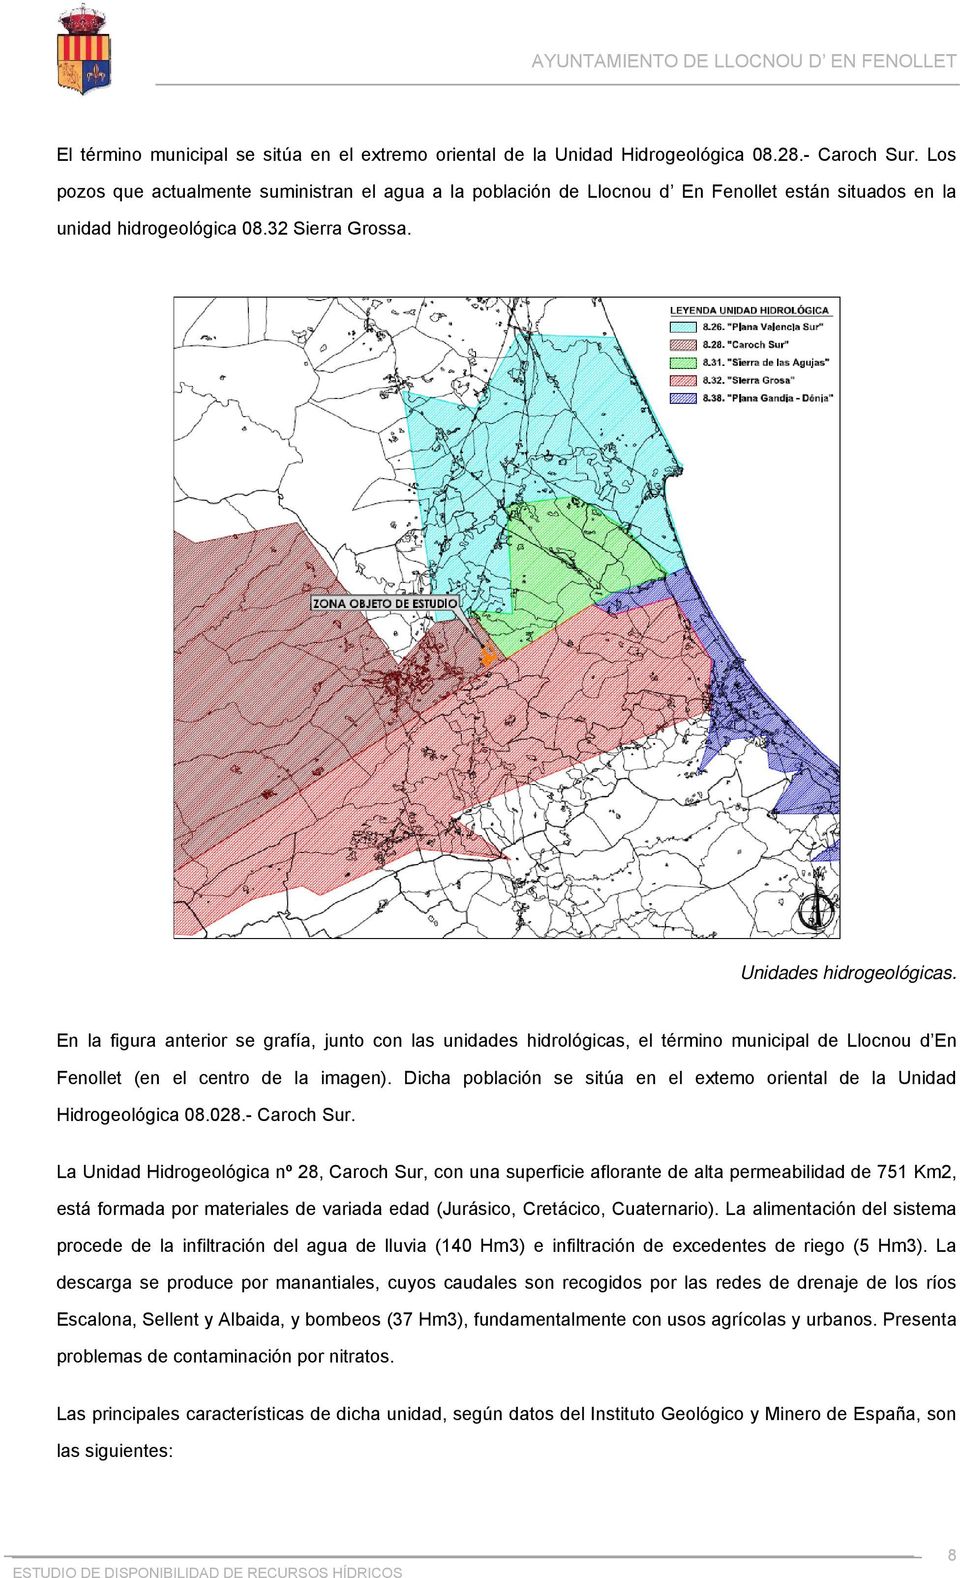 En la figura anterior se grafía, junto con las unidades hidrológicas, el término municipal de Llocnou d En Fenollet (en el centro de la imagen).